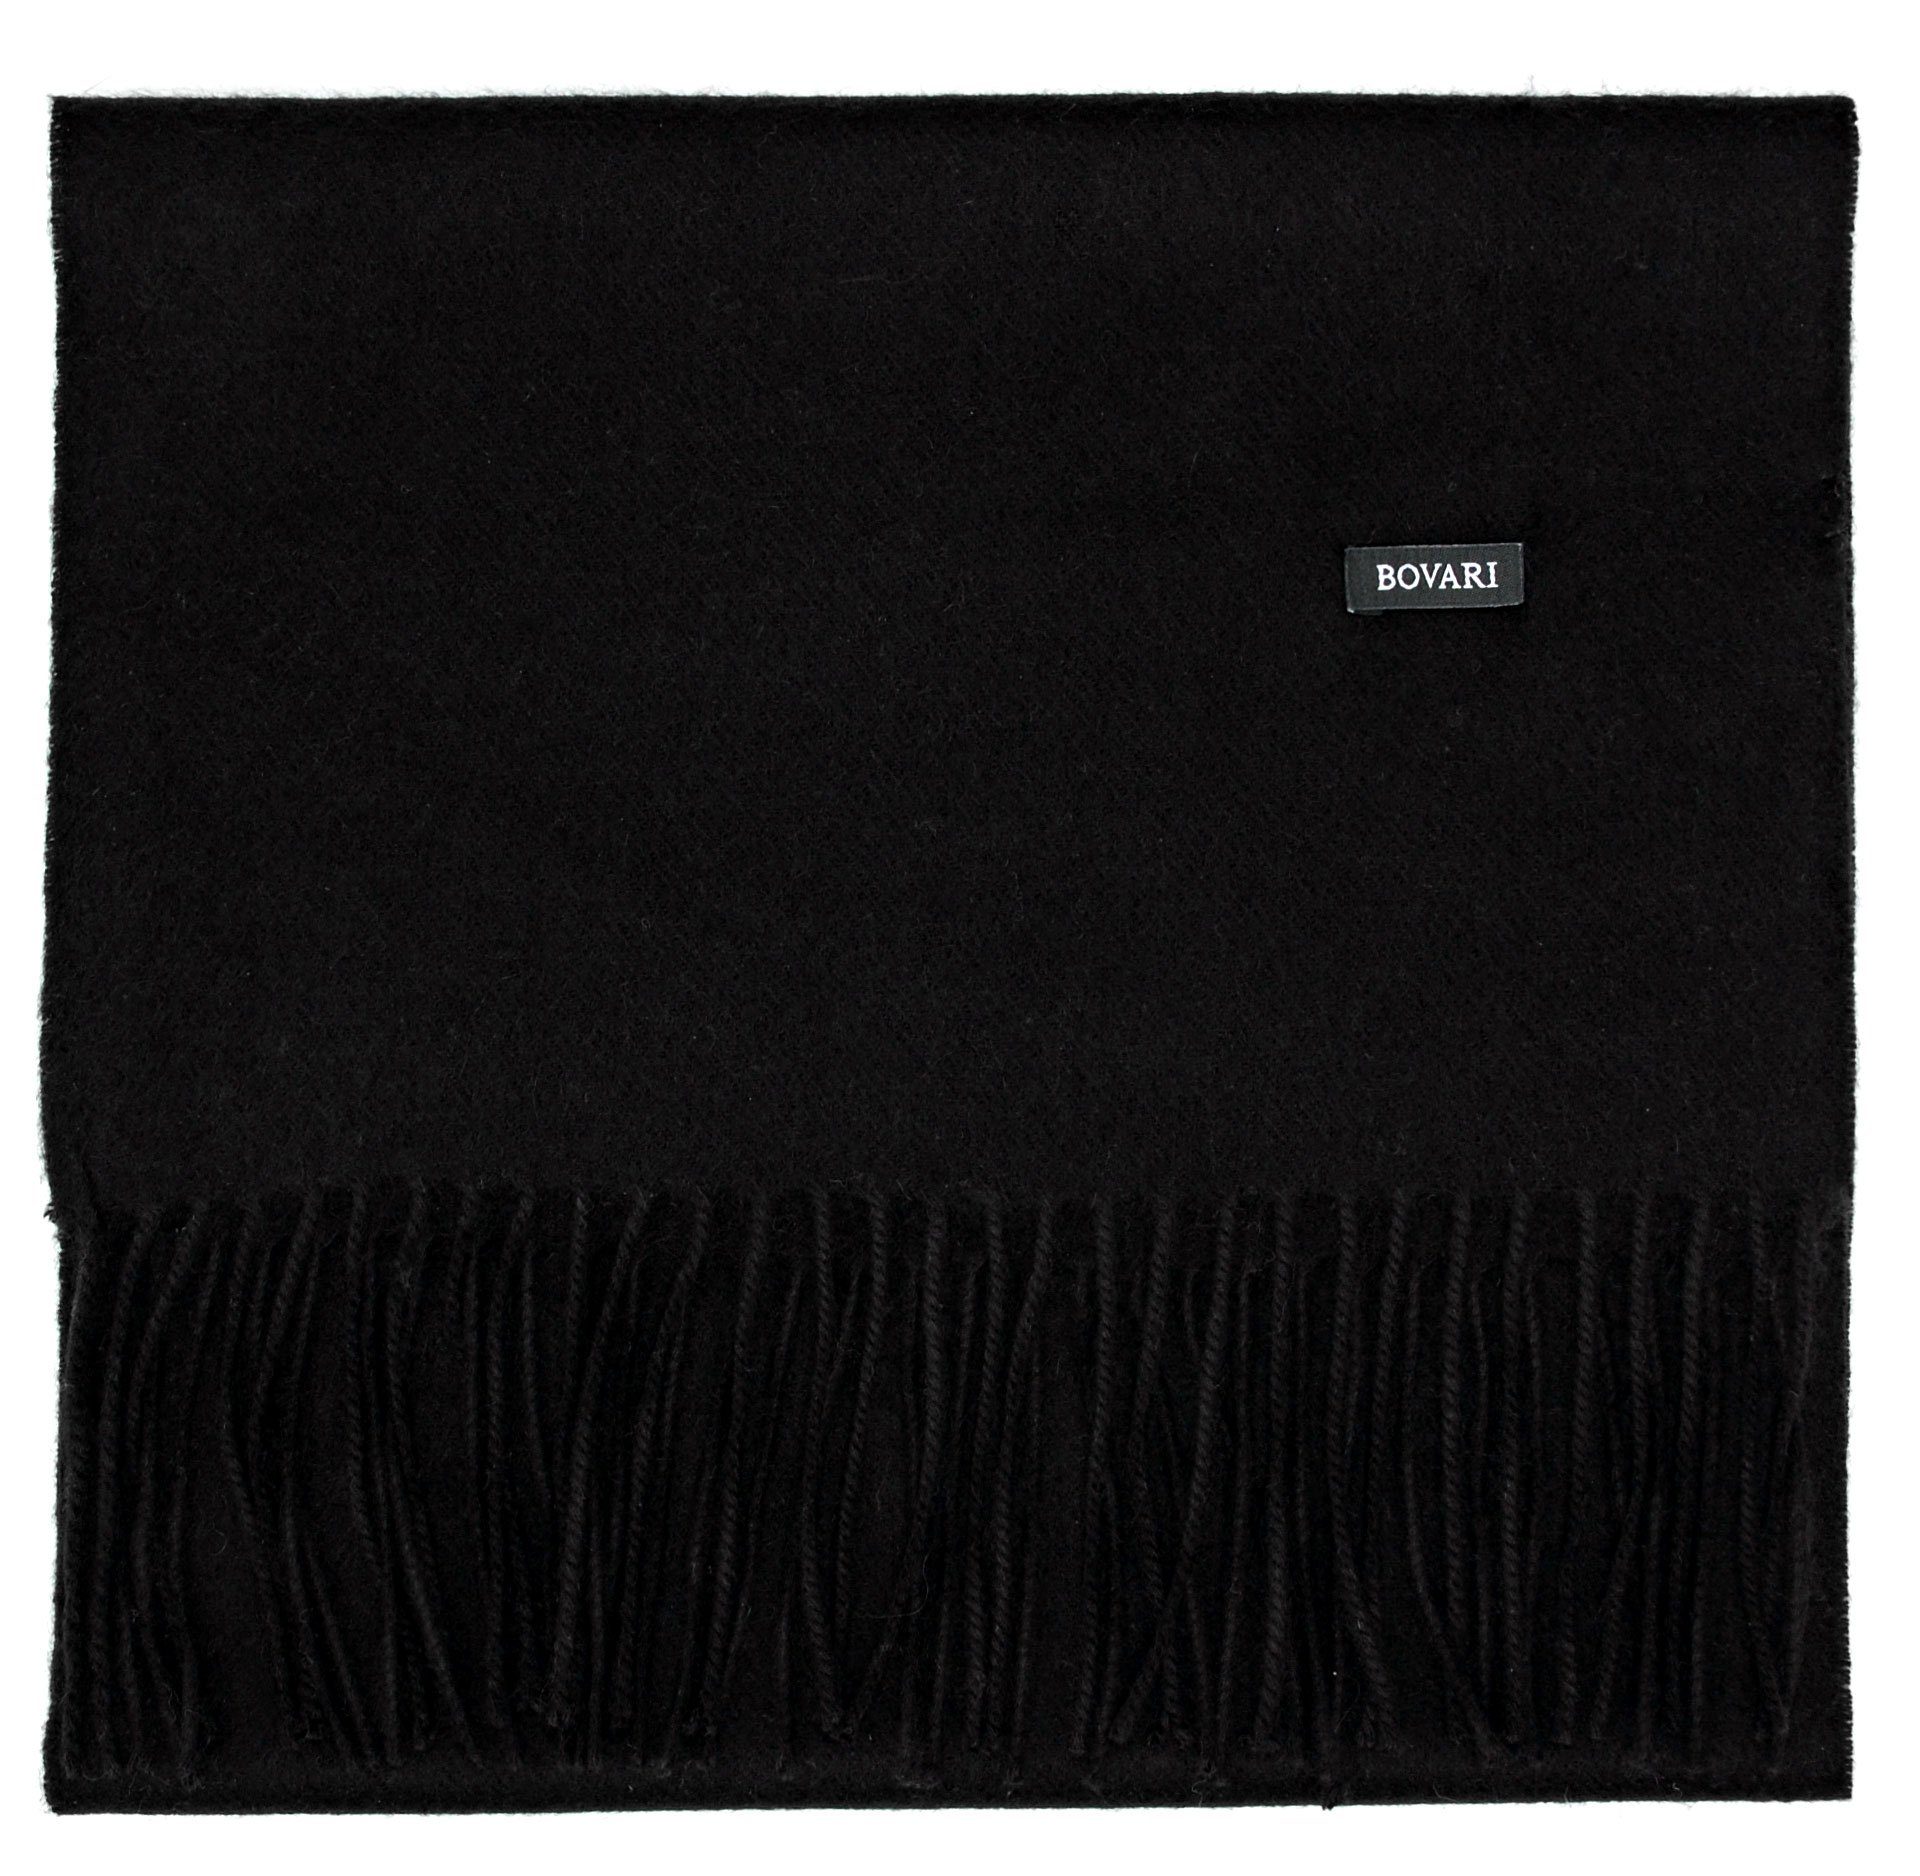 Bovari Kaschmirschal Kaschmir Schal Herren – 100% Kaschmir / Cashmere – Premium Qualität, 180 x 31 cm schwarz / black